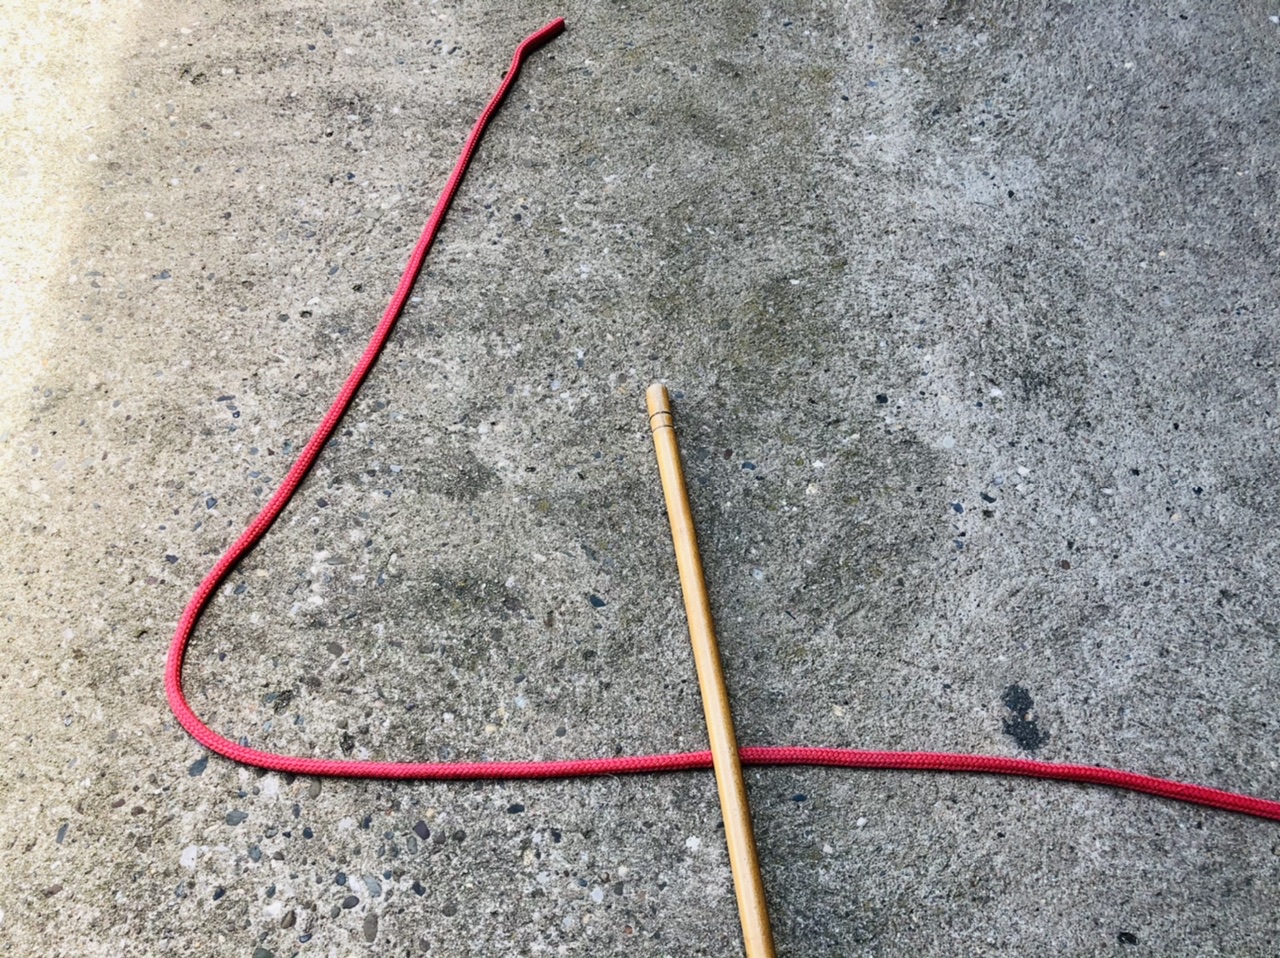 Bild zum Schritt 8 für das Bastel- und DIY-Abenteuer für Kinder: 'Alternativ verwendet ein zweites Seil oder einen Besenstiel.'